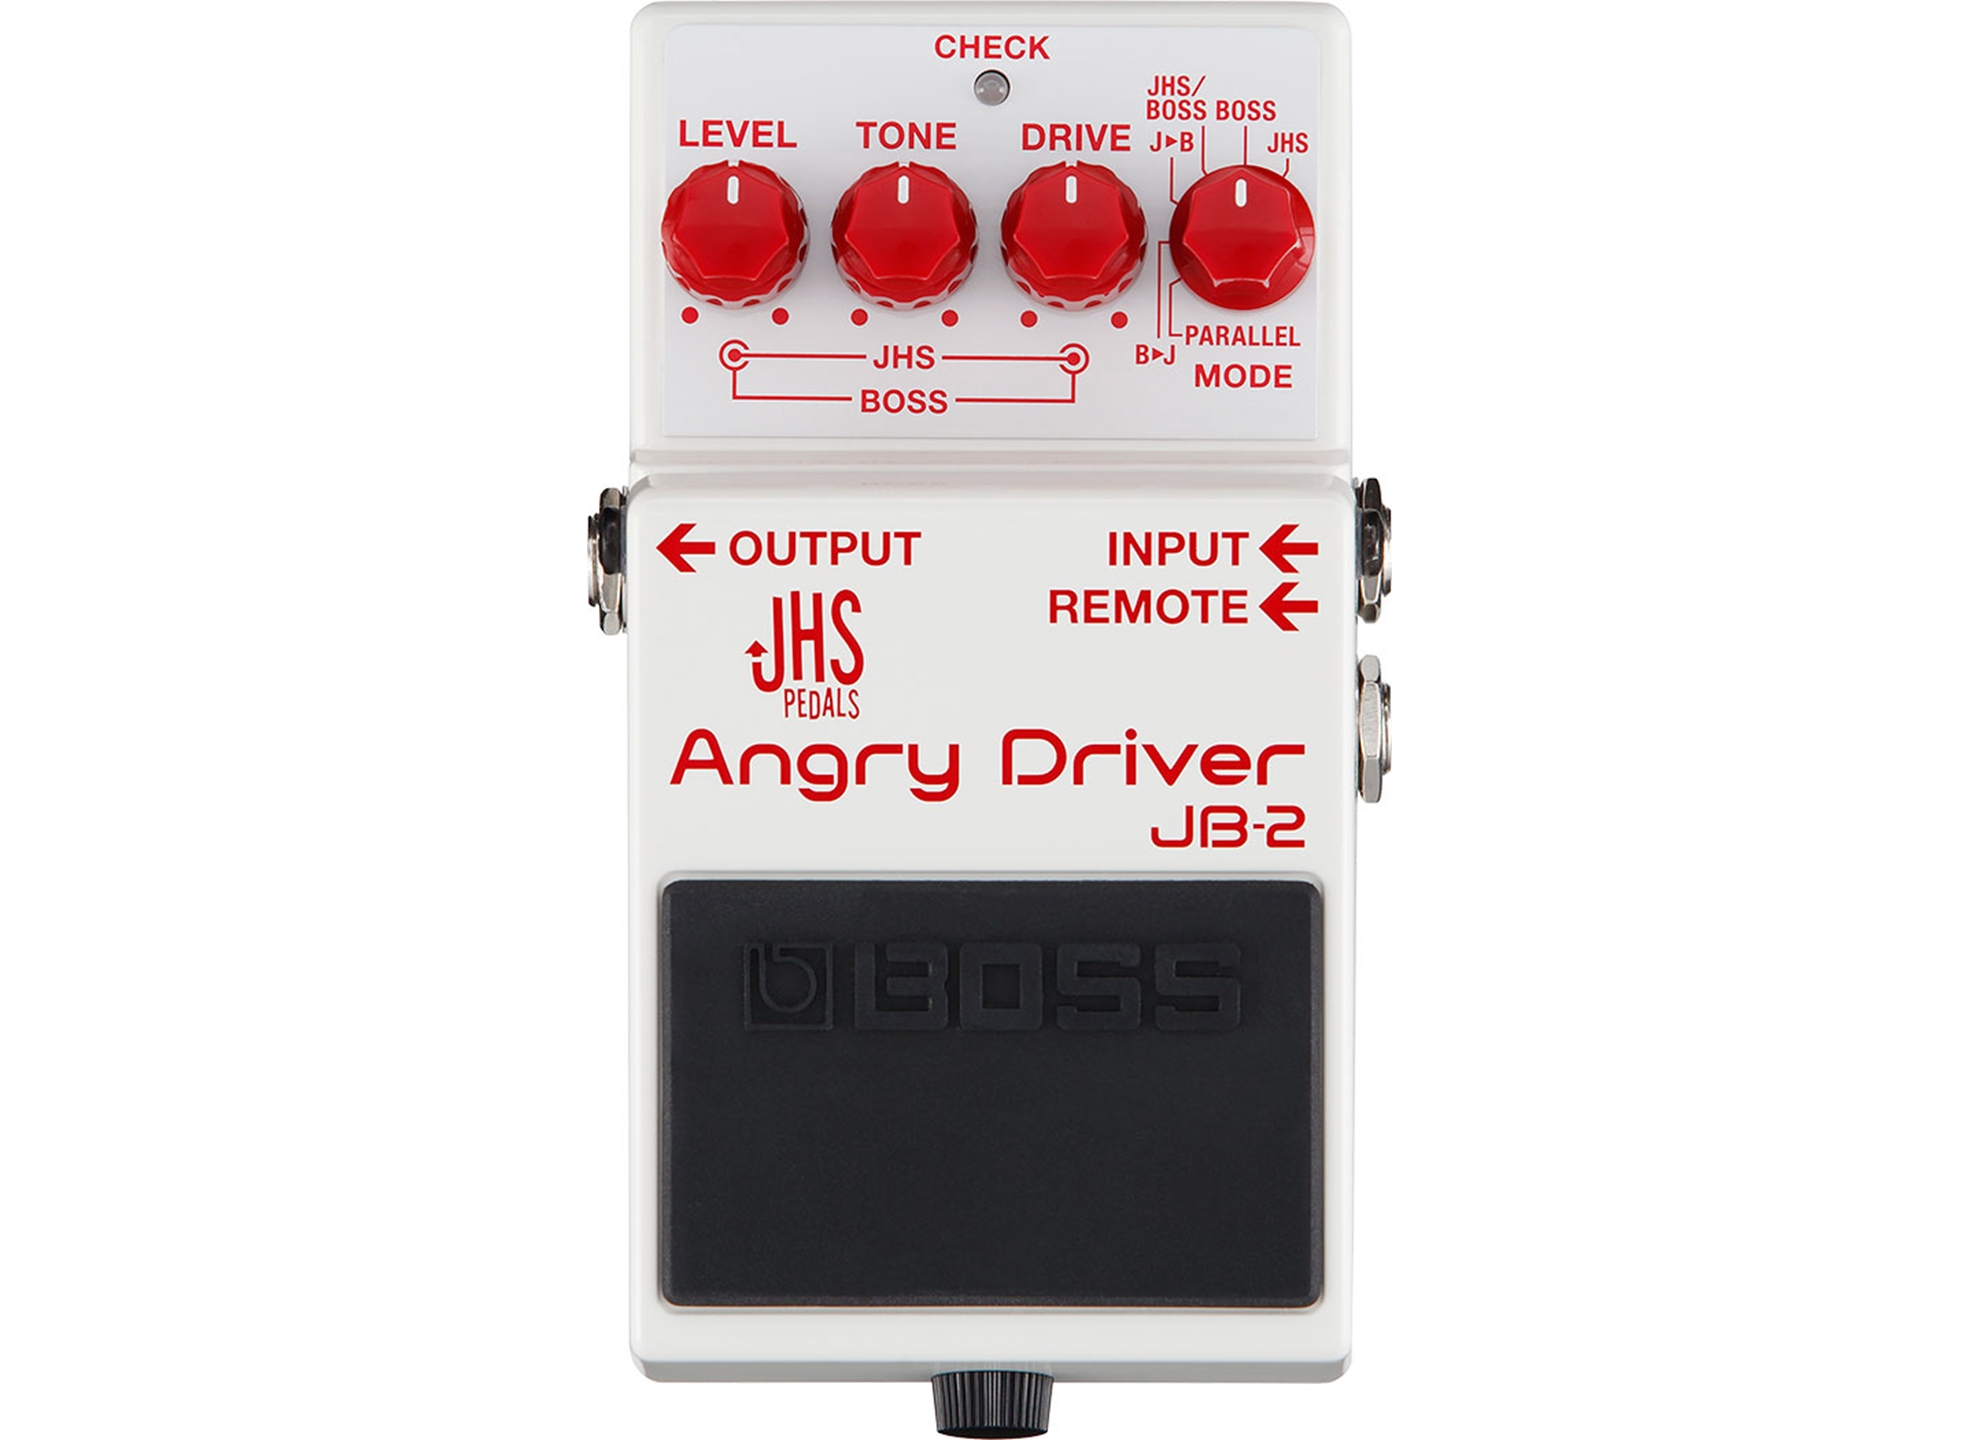 JB-2 Angry Driver